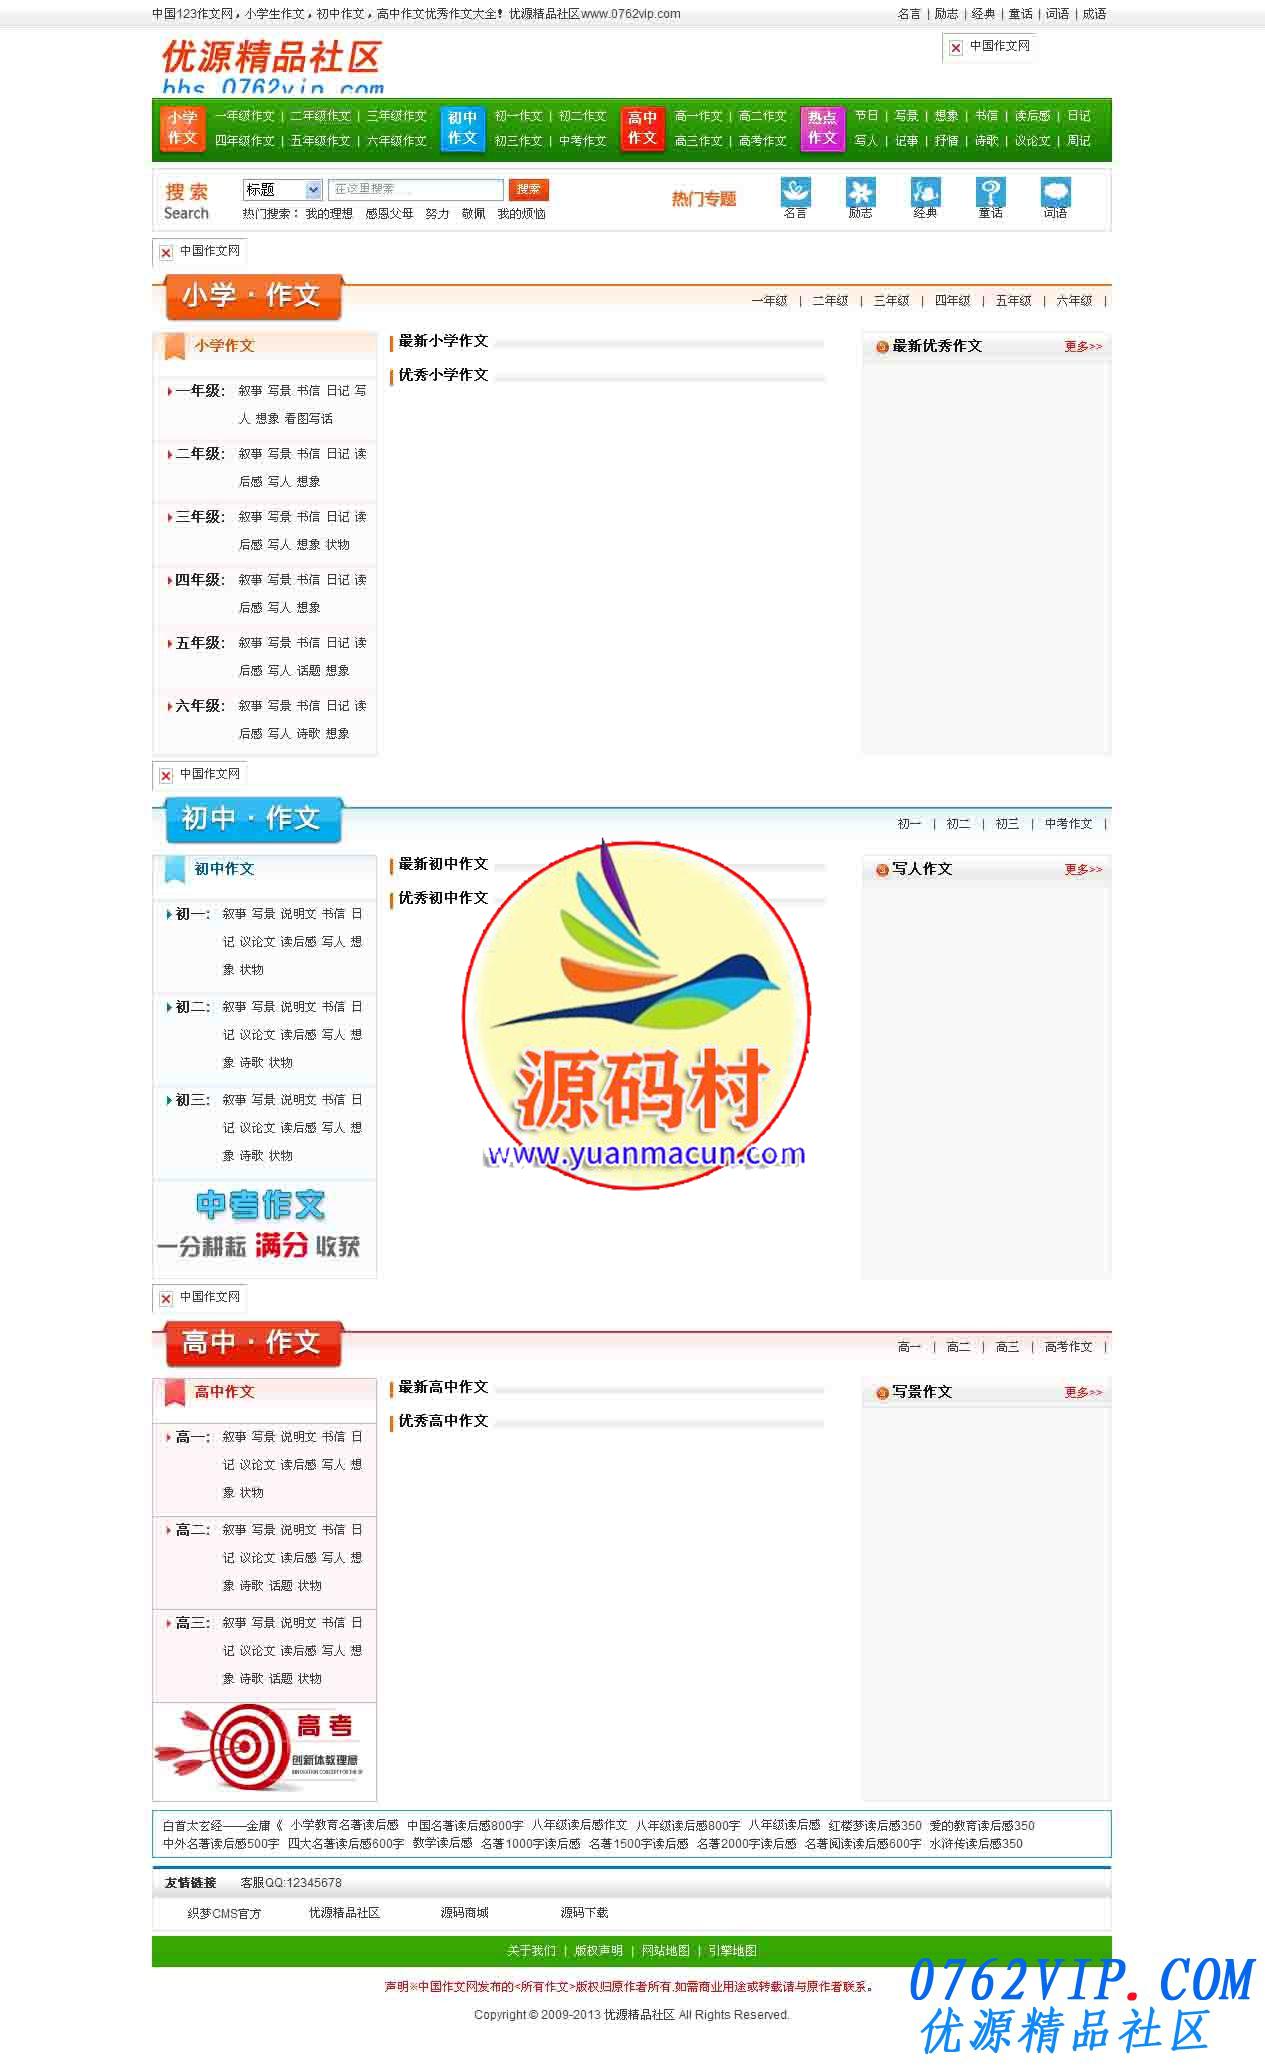 最新高仿T262中国作文网整站源码打包+1万多作文数据+后台一键采集 采用DEDE织梦内核